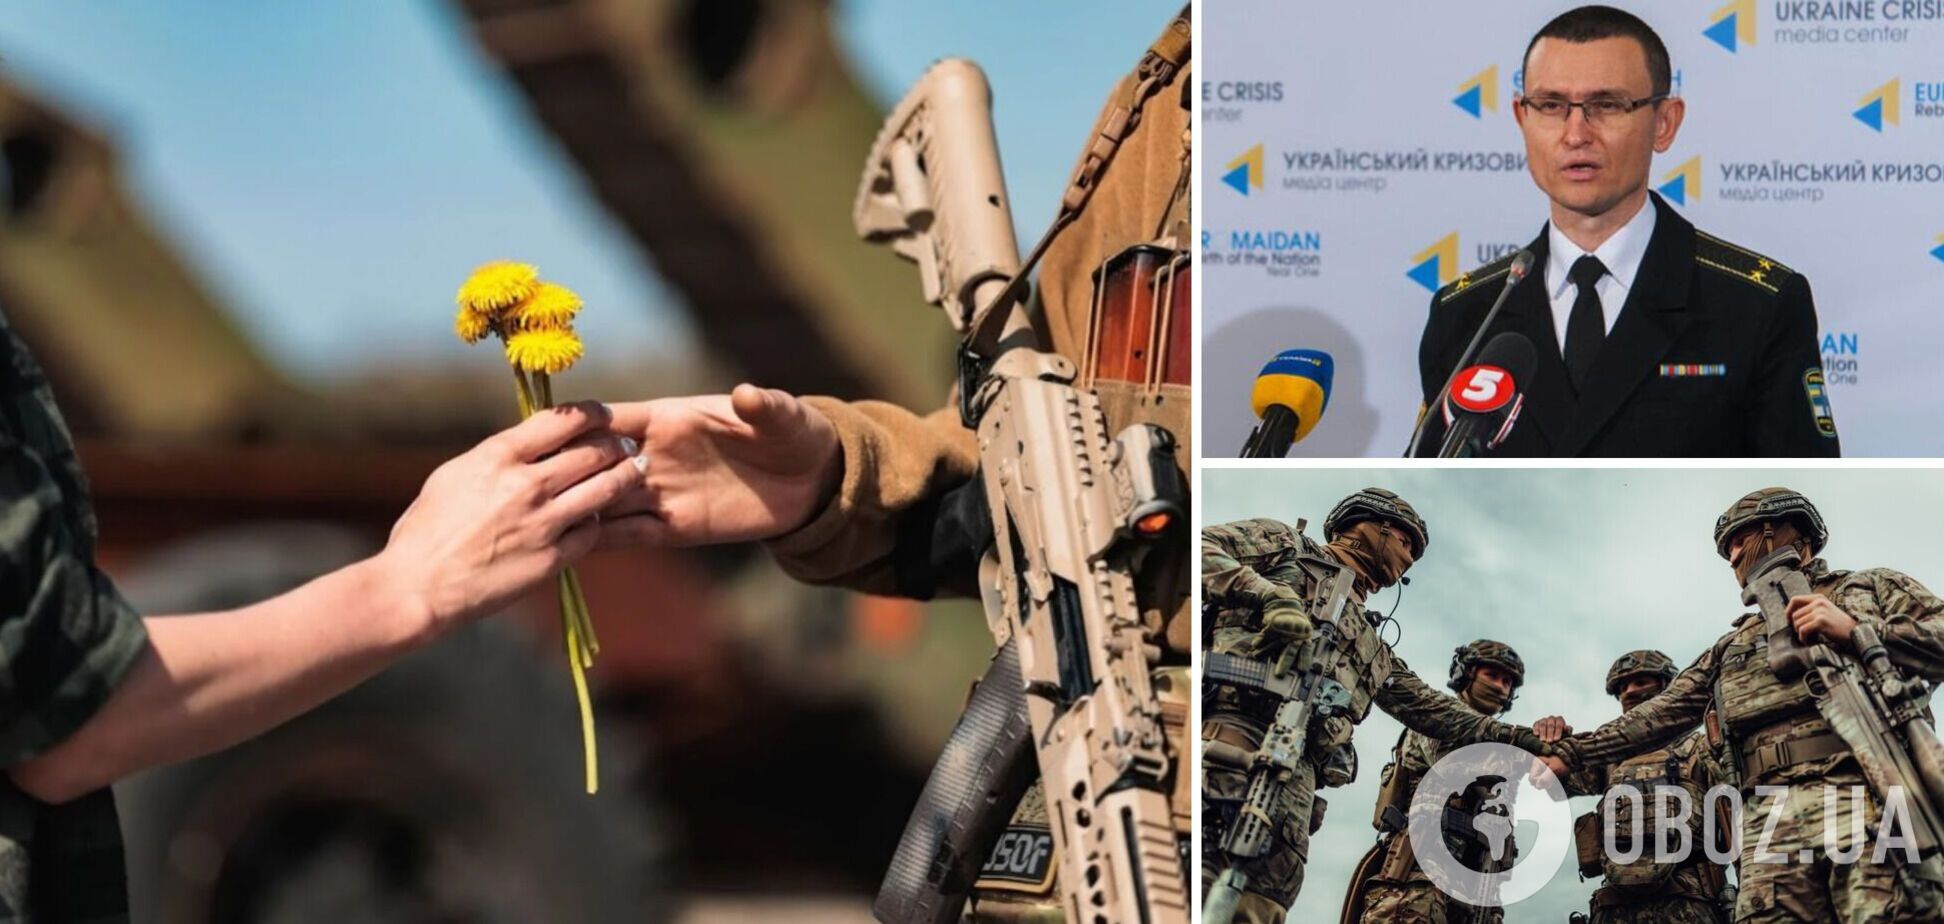 Селезнев: Украина в этом году победит, сроки указаны. Интервью